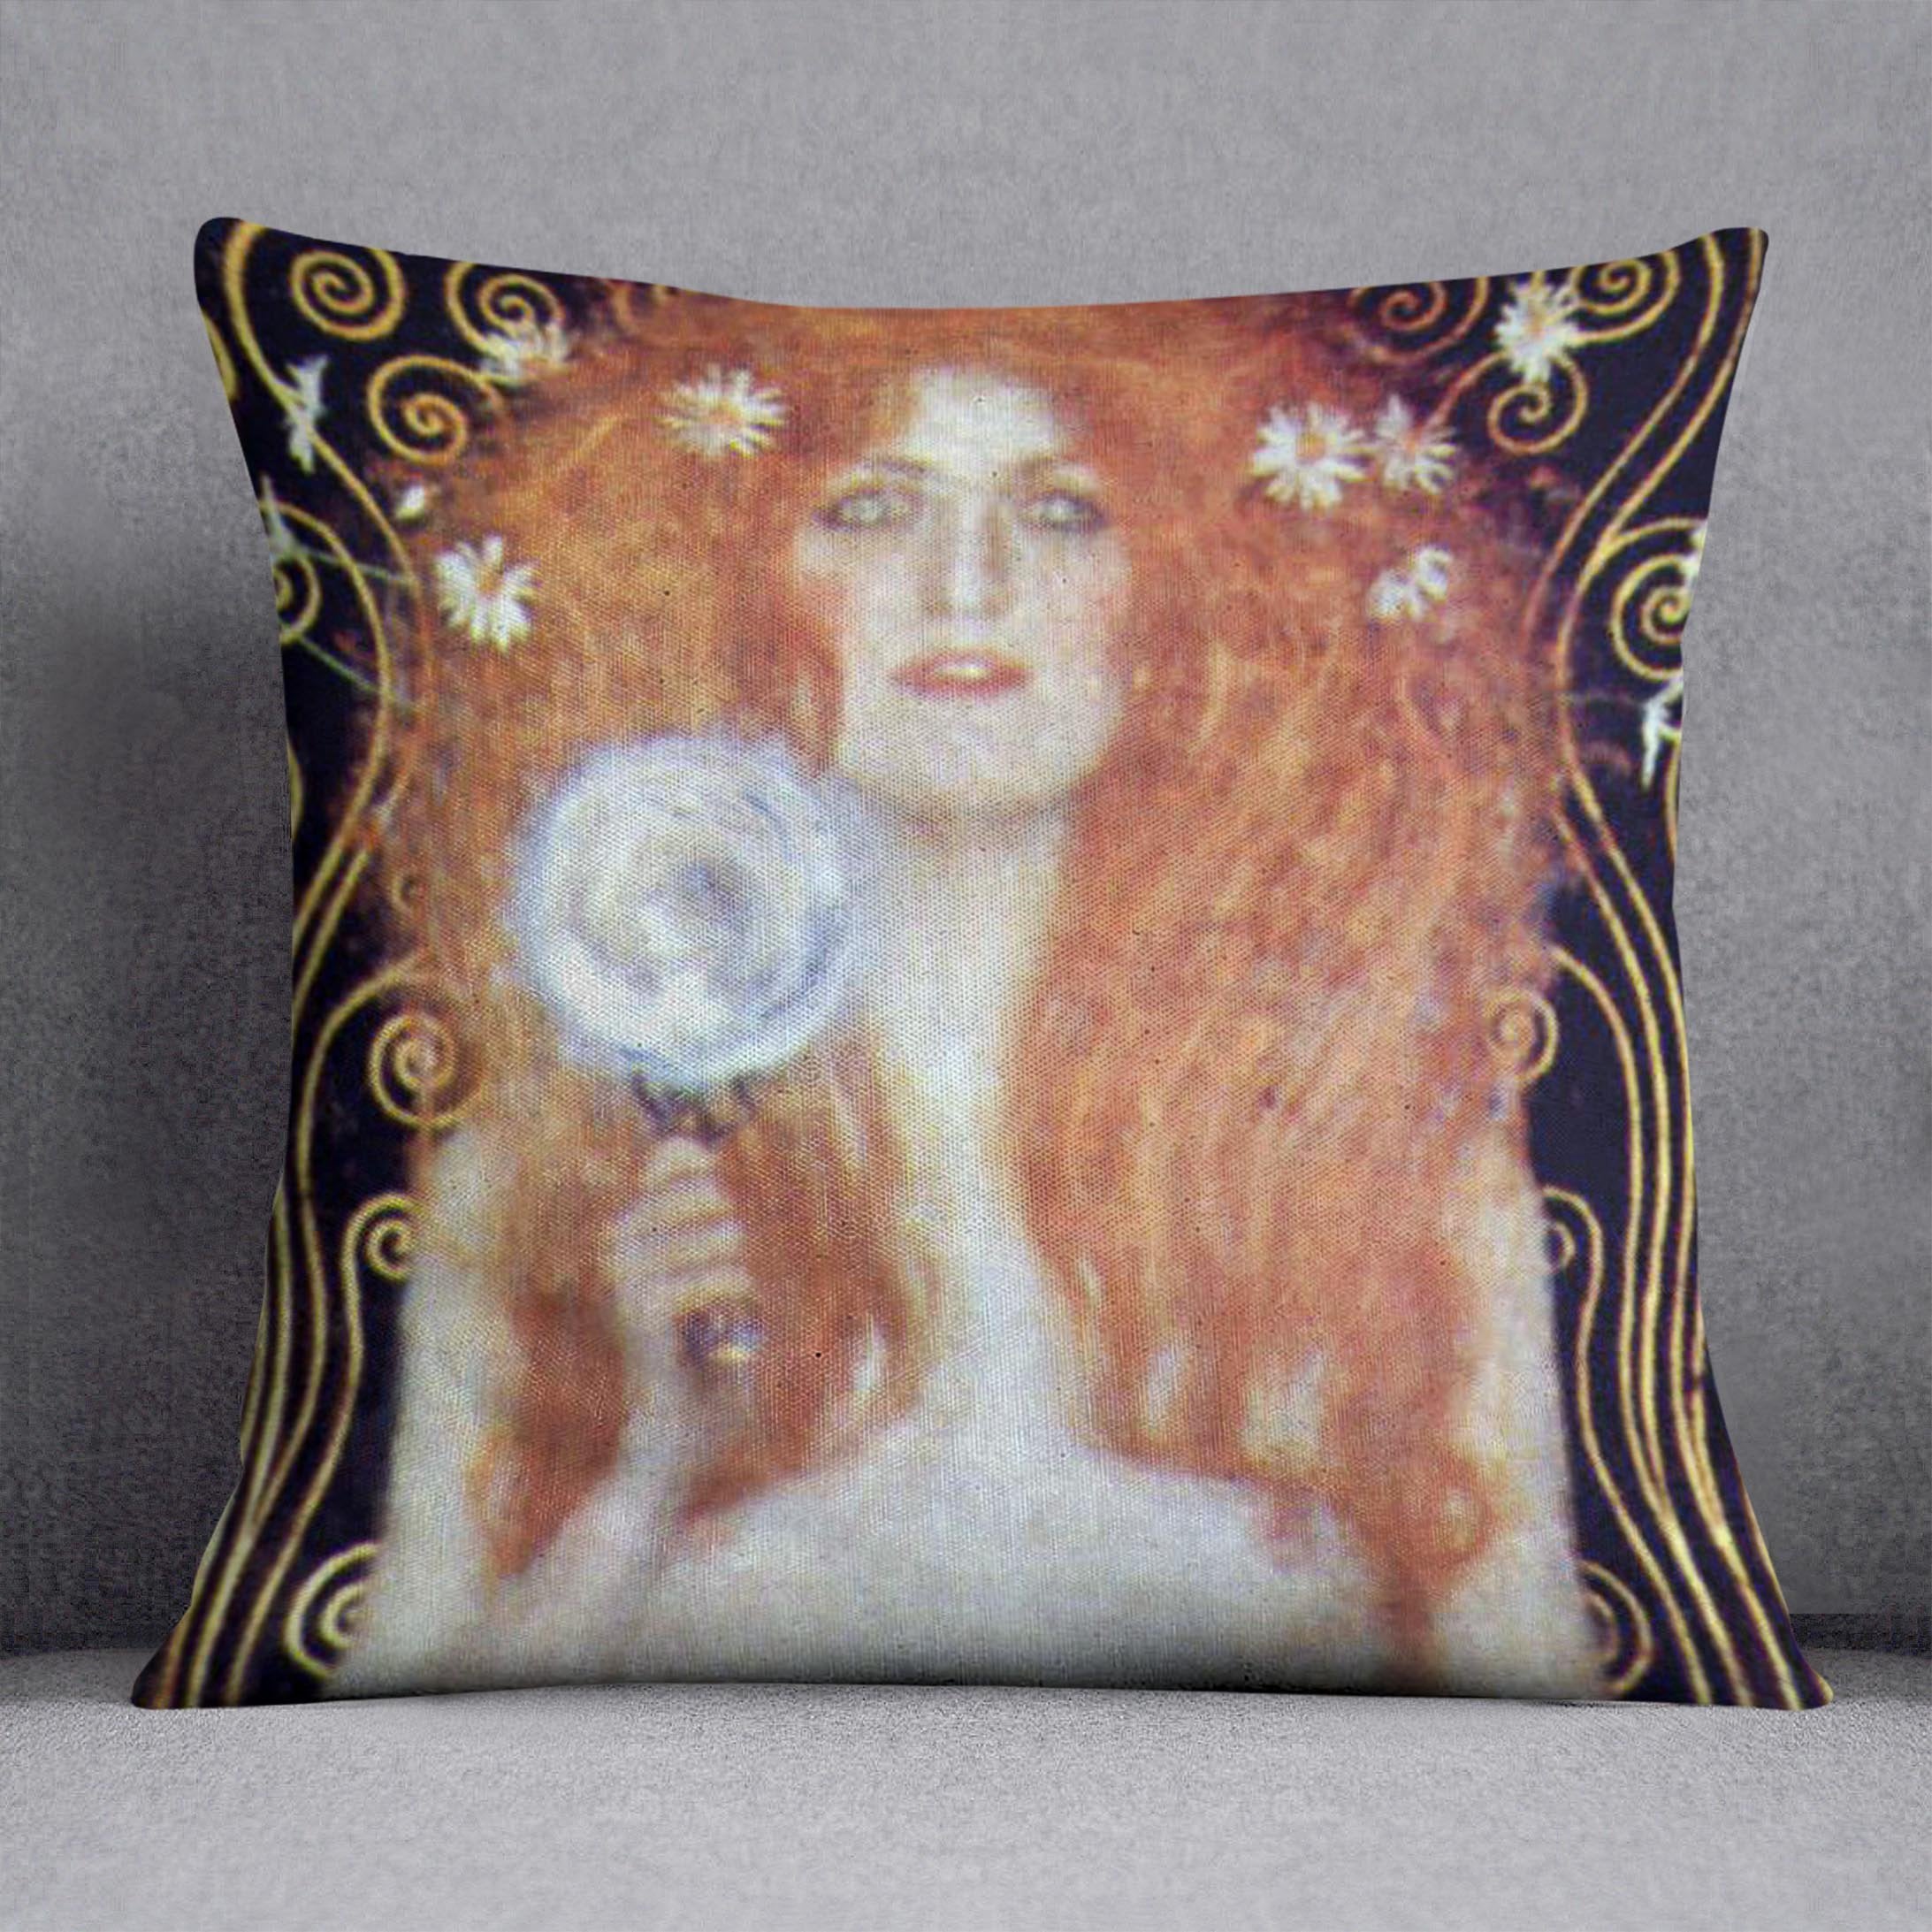 Nuda Veritas Naked Truth by Klimt Throw Pillow